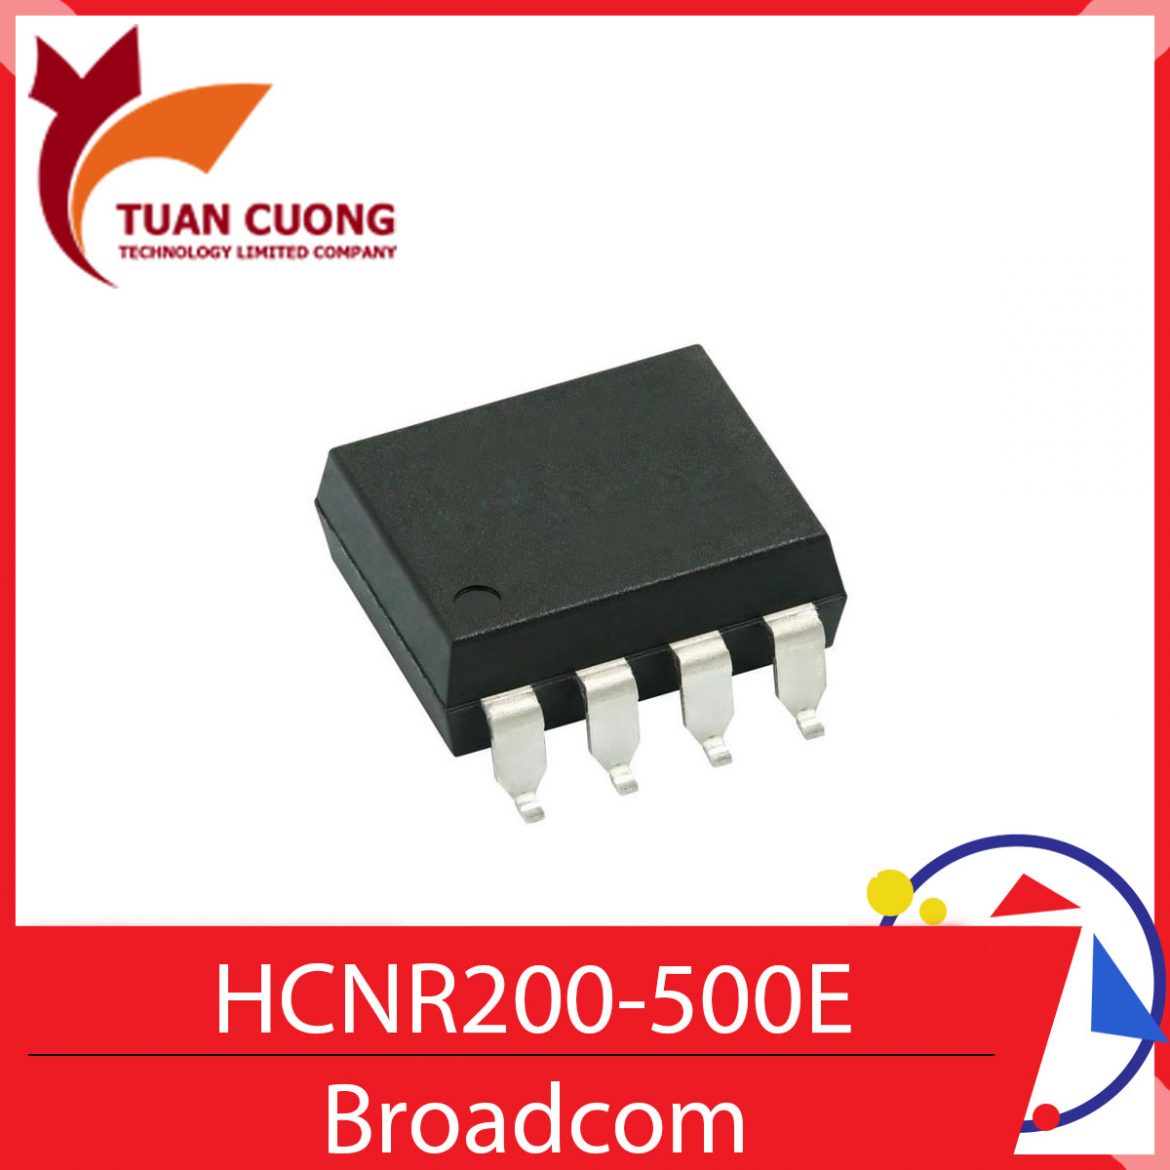 HCNR200-500E Broadcom